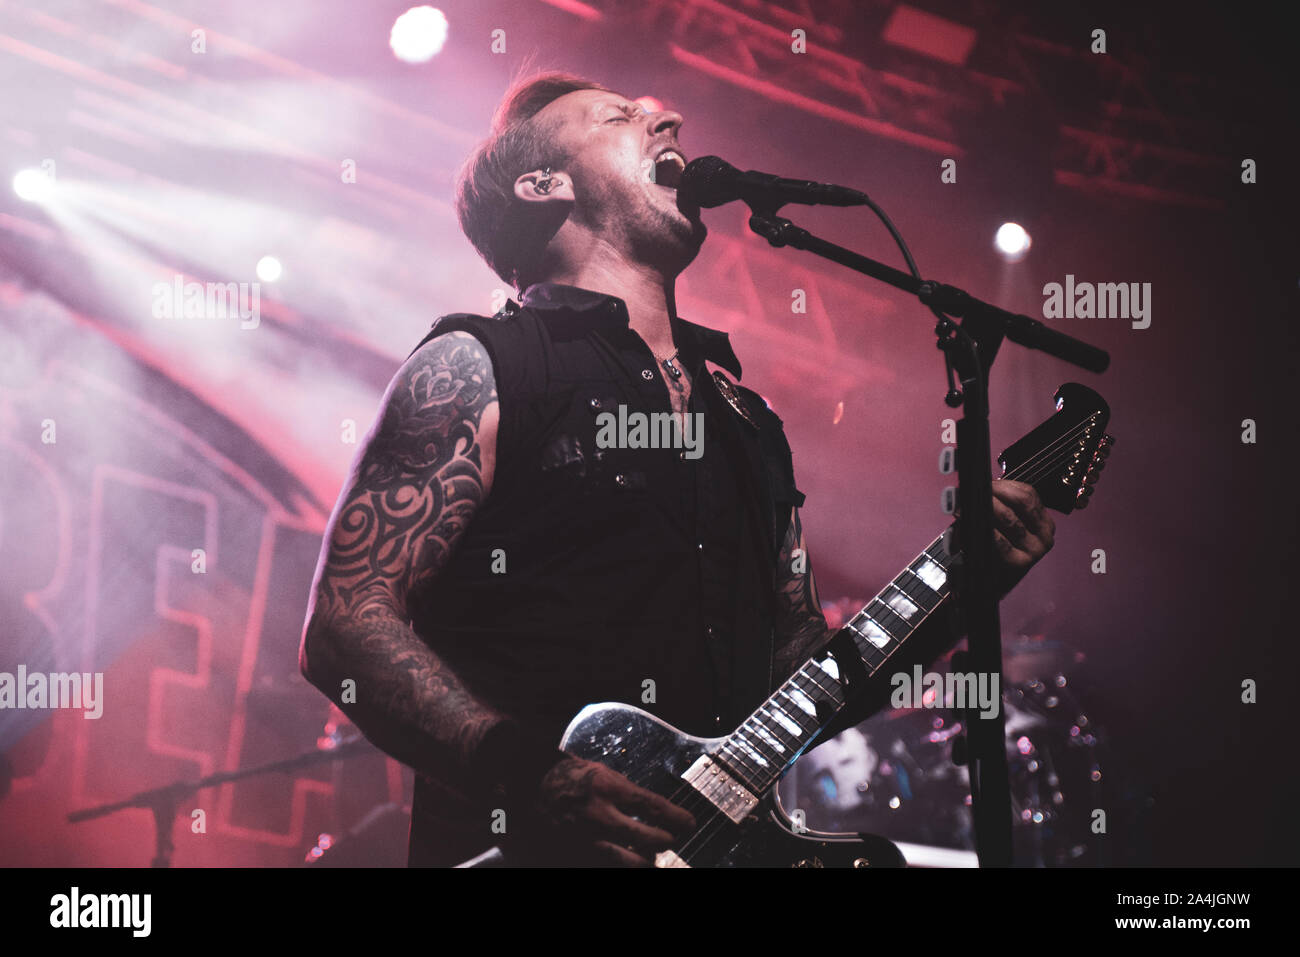 FABRIQUE, Milano, Italien - 2019/10/14: Michael Poulsen der dänischen Band Volbeat live auf der Bühne Fabrique, für das Zurückspulen Replay Reboud band Tour 2019 Stockfoto